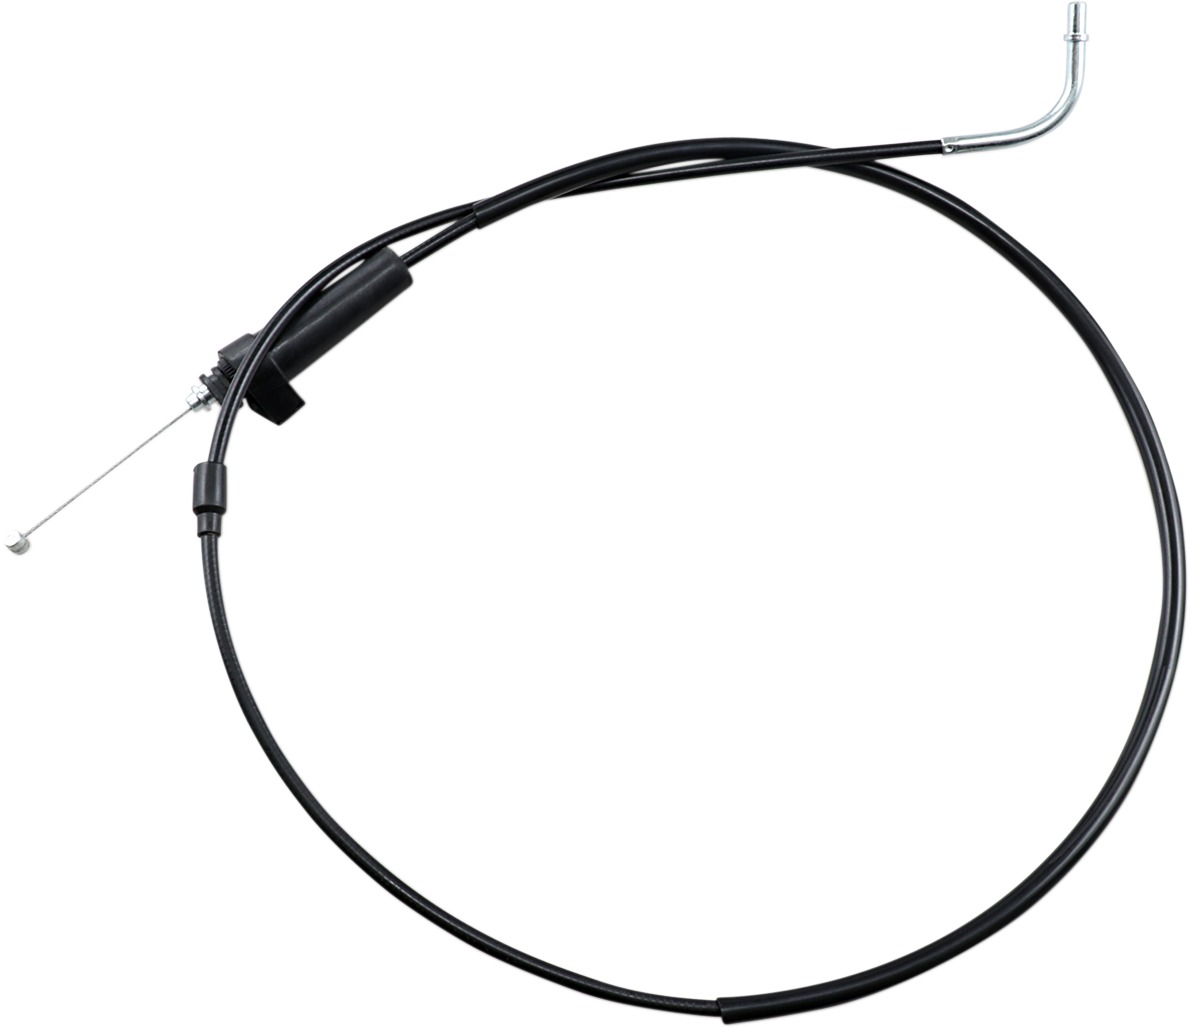 Black Vinyl Throttle Cable - 84-87 Kawasaki KX250 KX500 - Click Image to Close